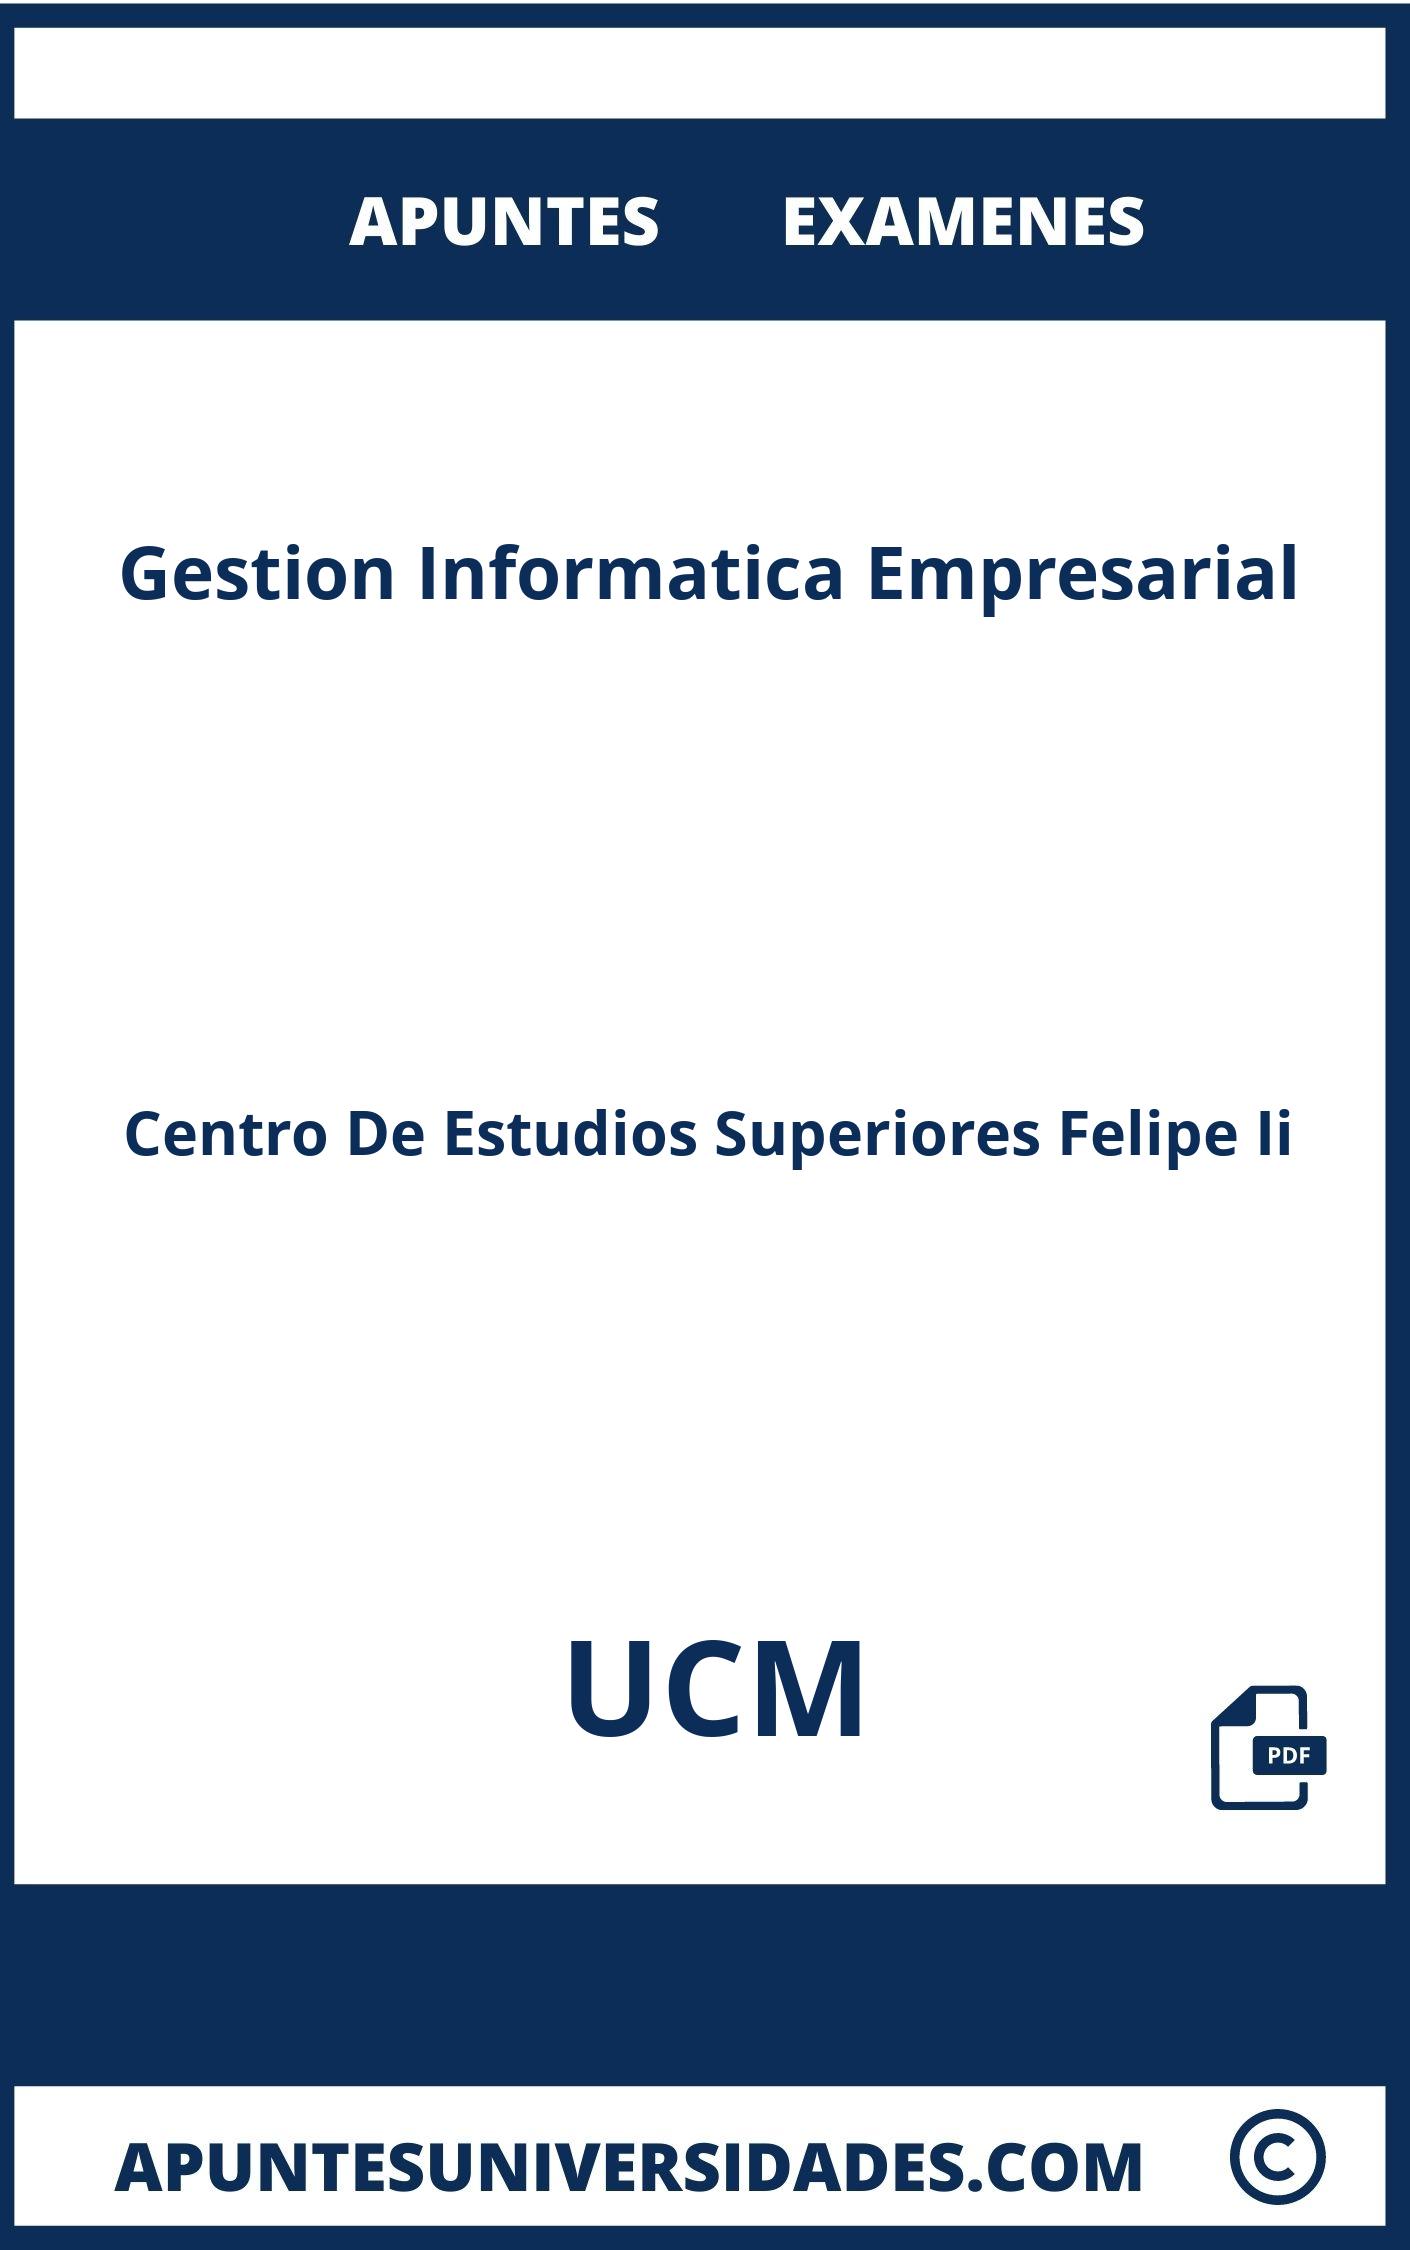 Apuntes y Examenes Gestion Informatica Empresarial UCM